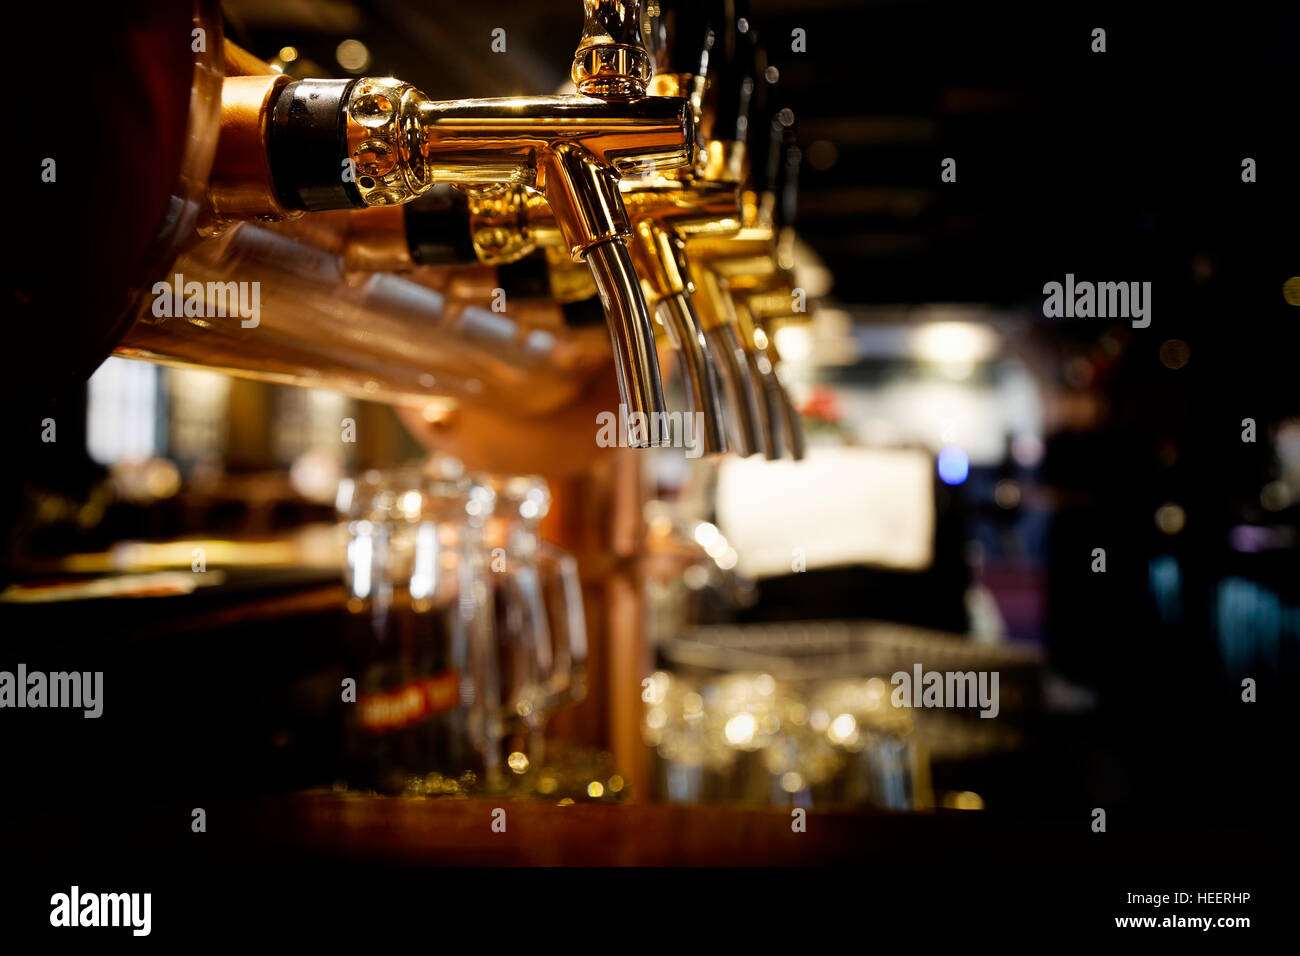 golden shiny beer taps in beer bar Stock Photo